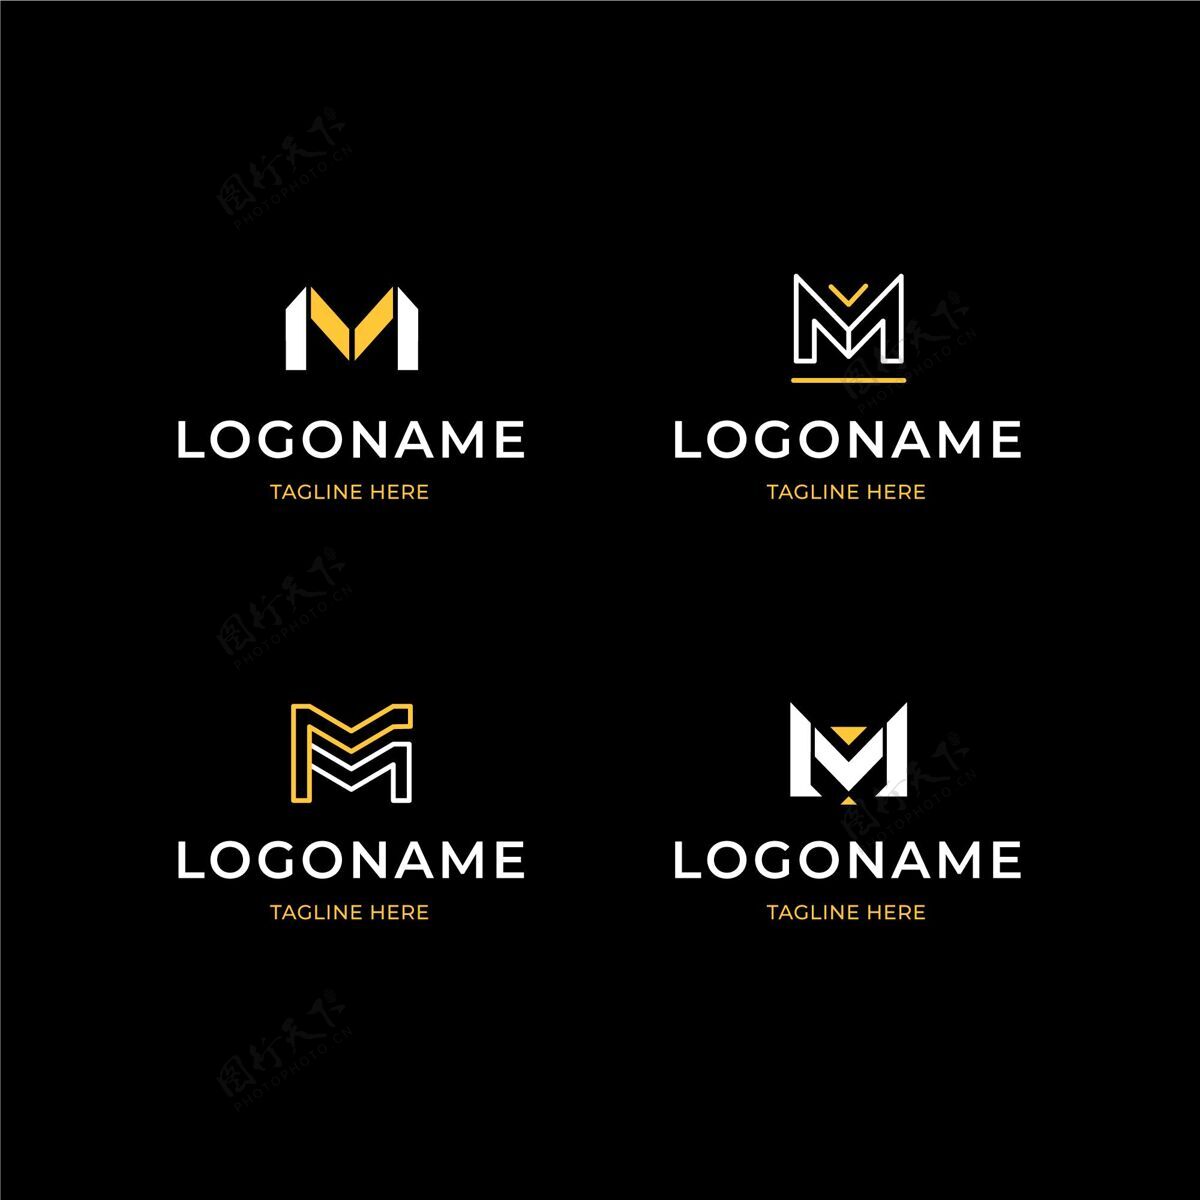 公司标识平面设计m标志系列企业标识字母标识公司